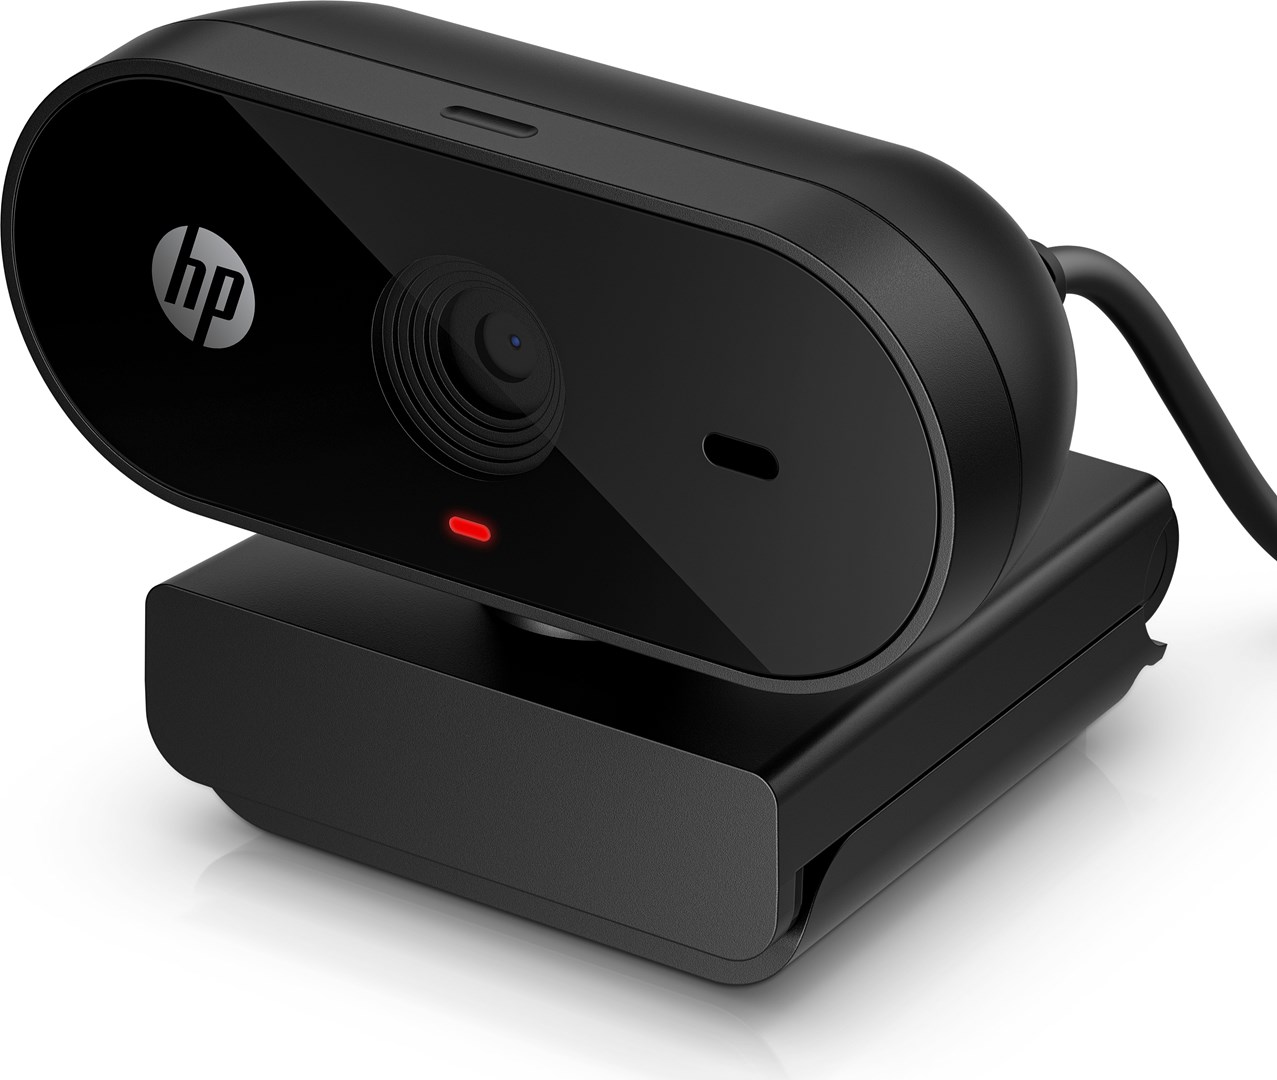 Osta tuote HP 320 FHD -verkkokamera verkkokaupastamme Korhone 10% alennuksella koodilla KORHONE